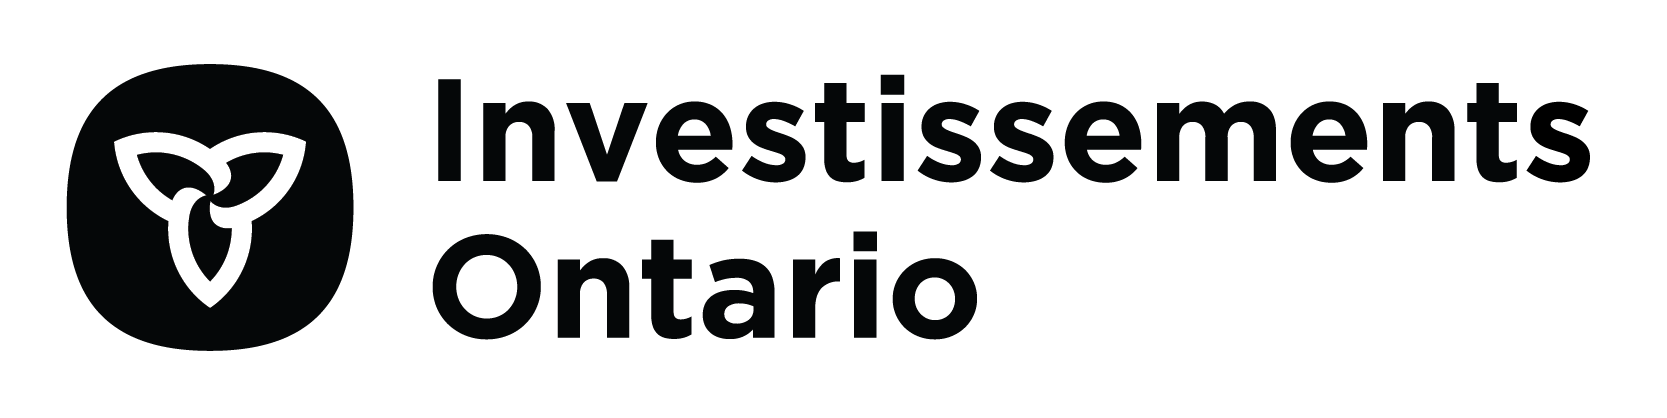 Logos d’Investissements Ontario - Noir transparent en français